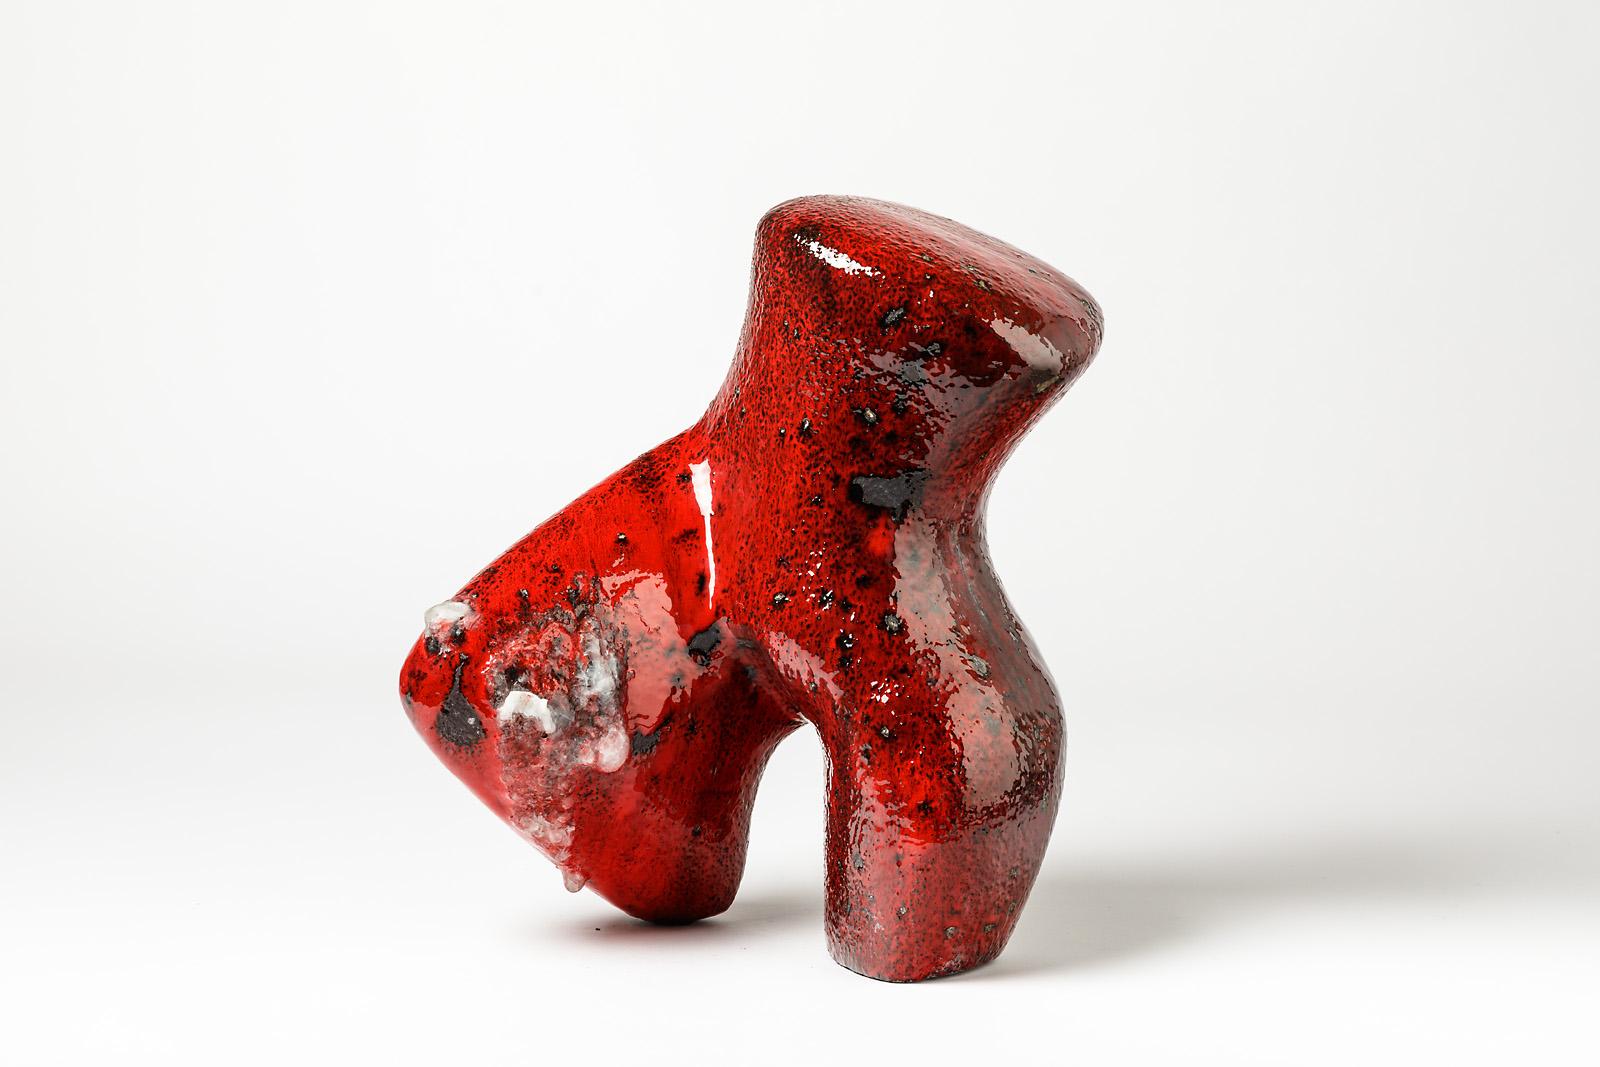 Eine seltene Keramikskulptur mit rotem Glasurdekor von Tim Orr.
Perfekter Originalzustand.
Unter dem Sockel signiert,
ca. 1970-1980.